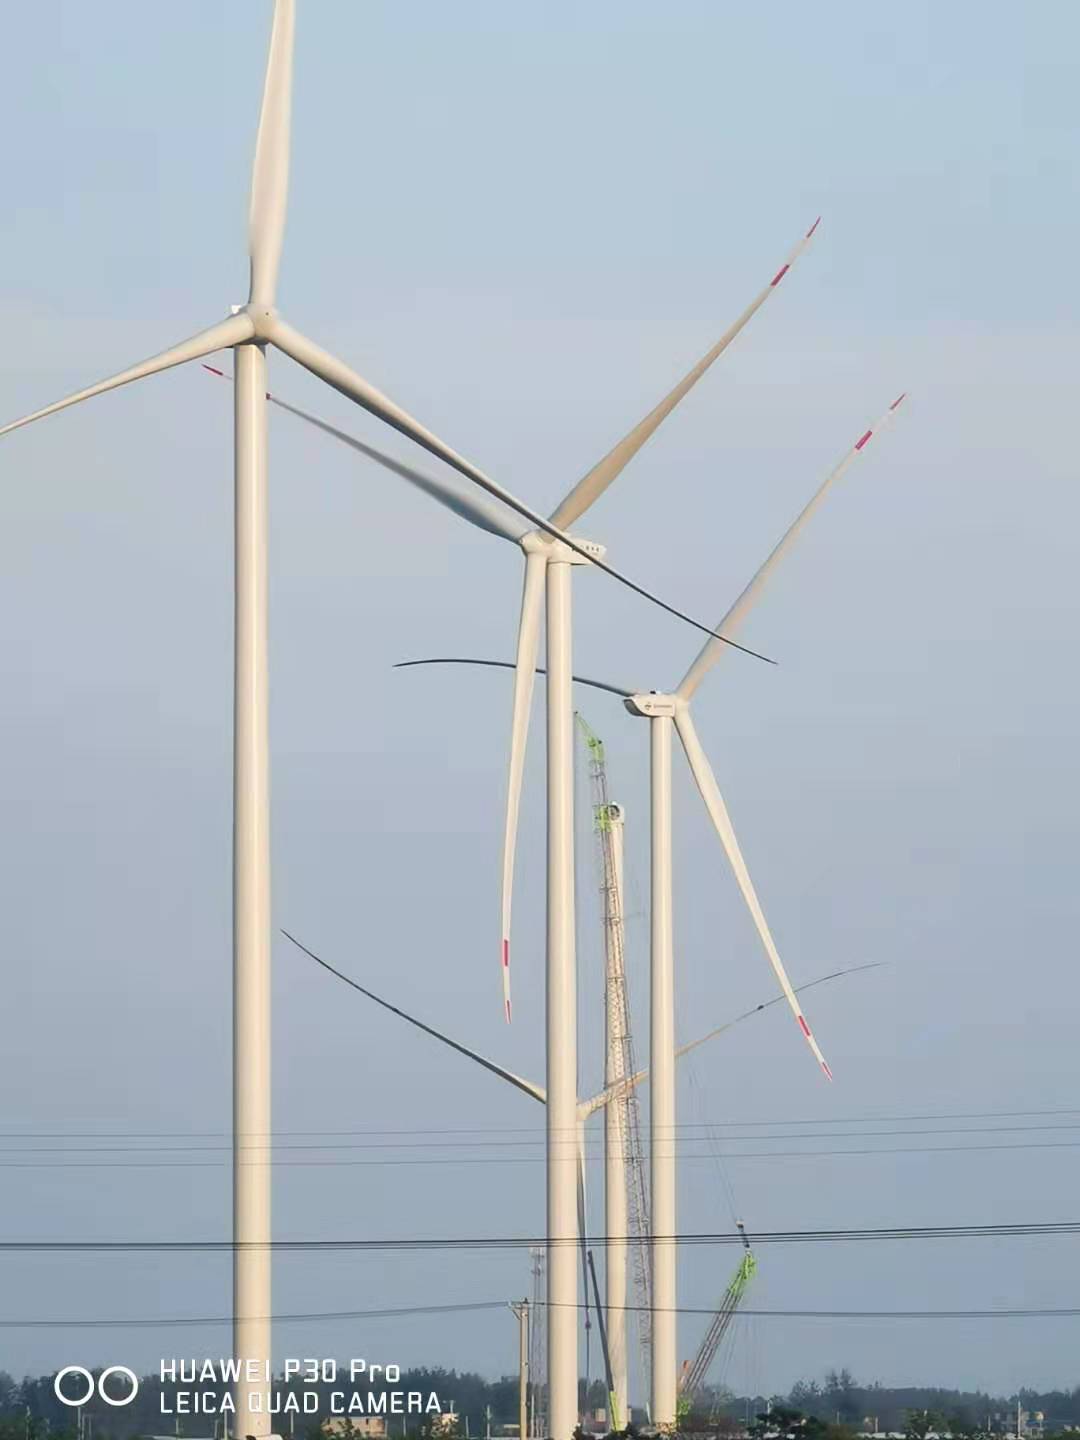 华能蒙城县小涧二期风电场项目